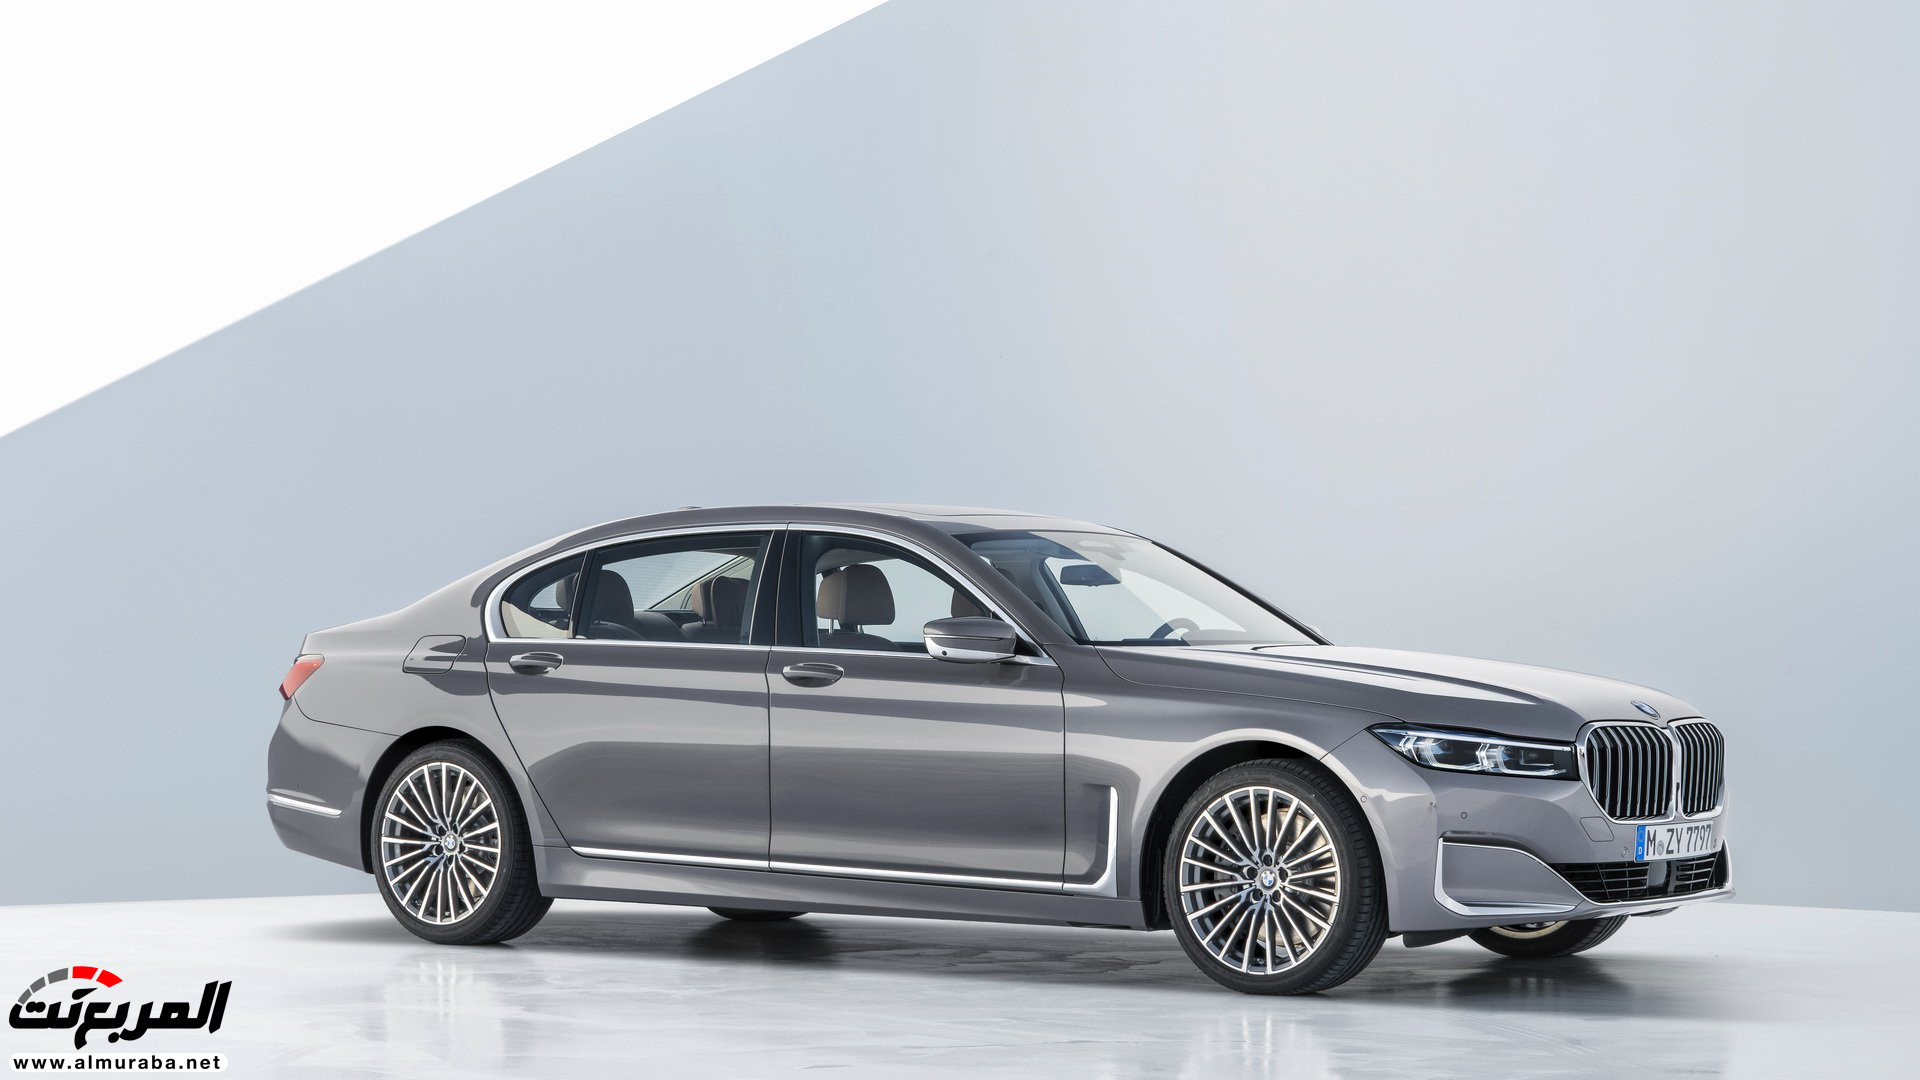 بي ام دبليو الفئة السابعة 2020 المحدثة تكشف نفسها رسمياً "صور ومواصفات" BMW 7 Series 258